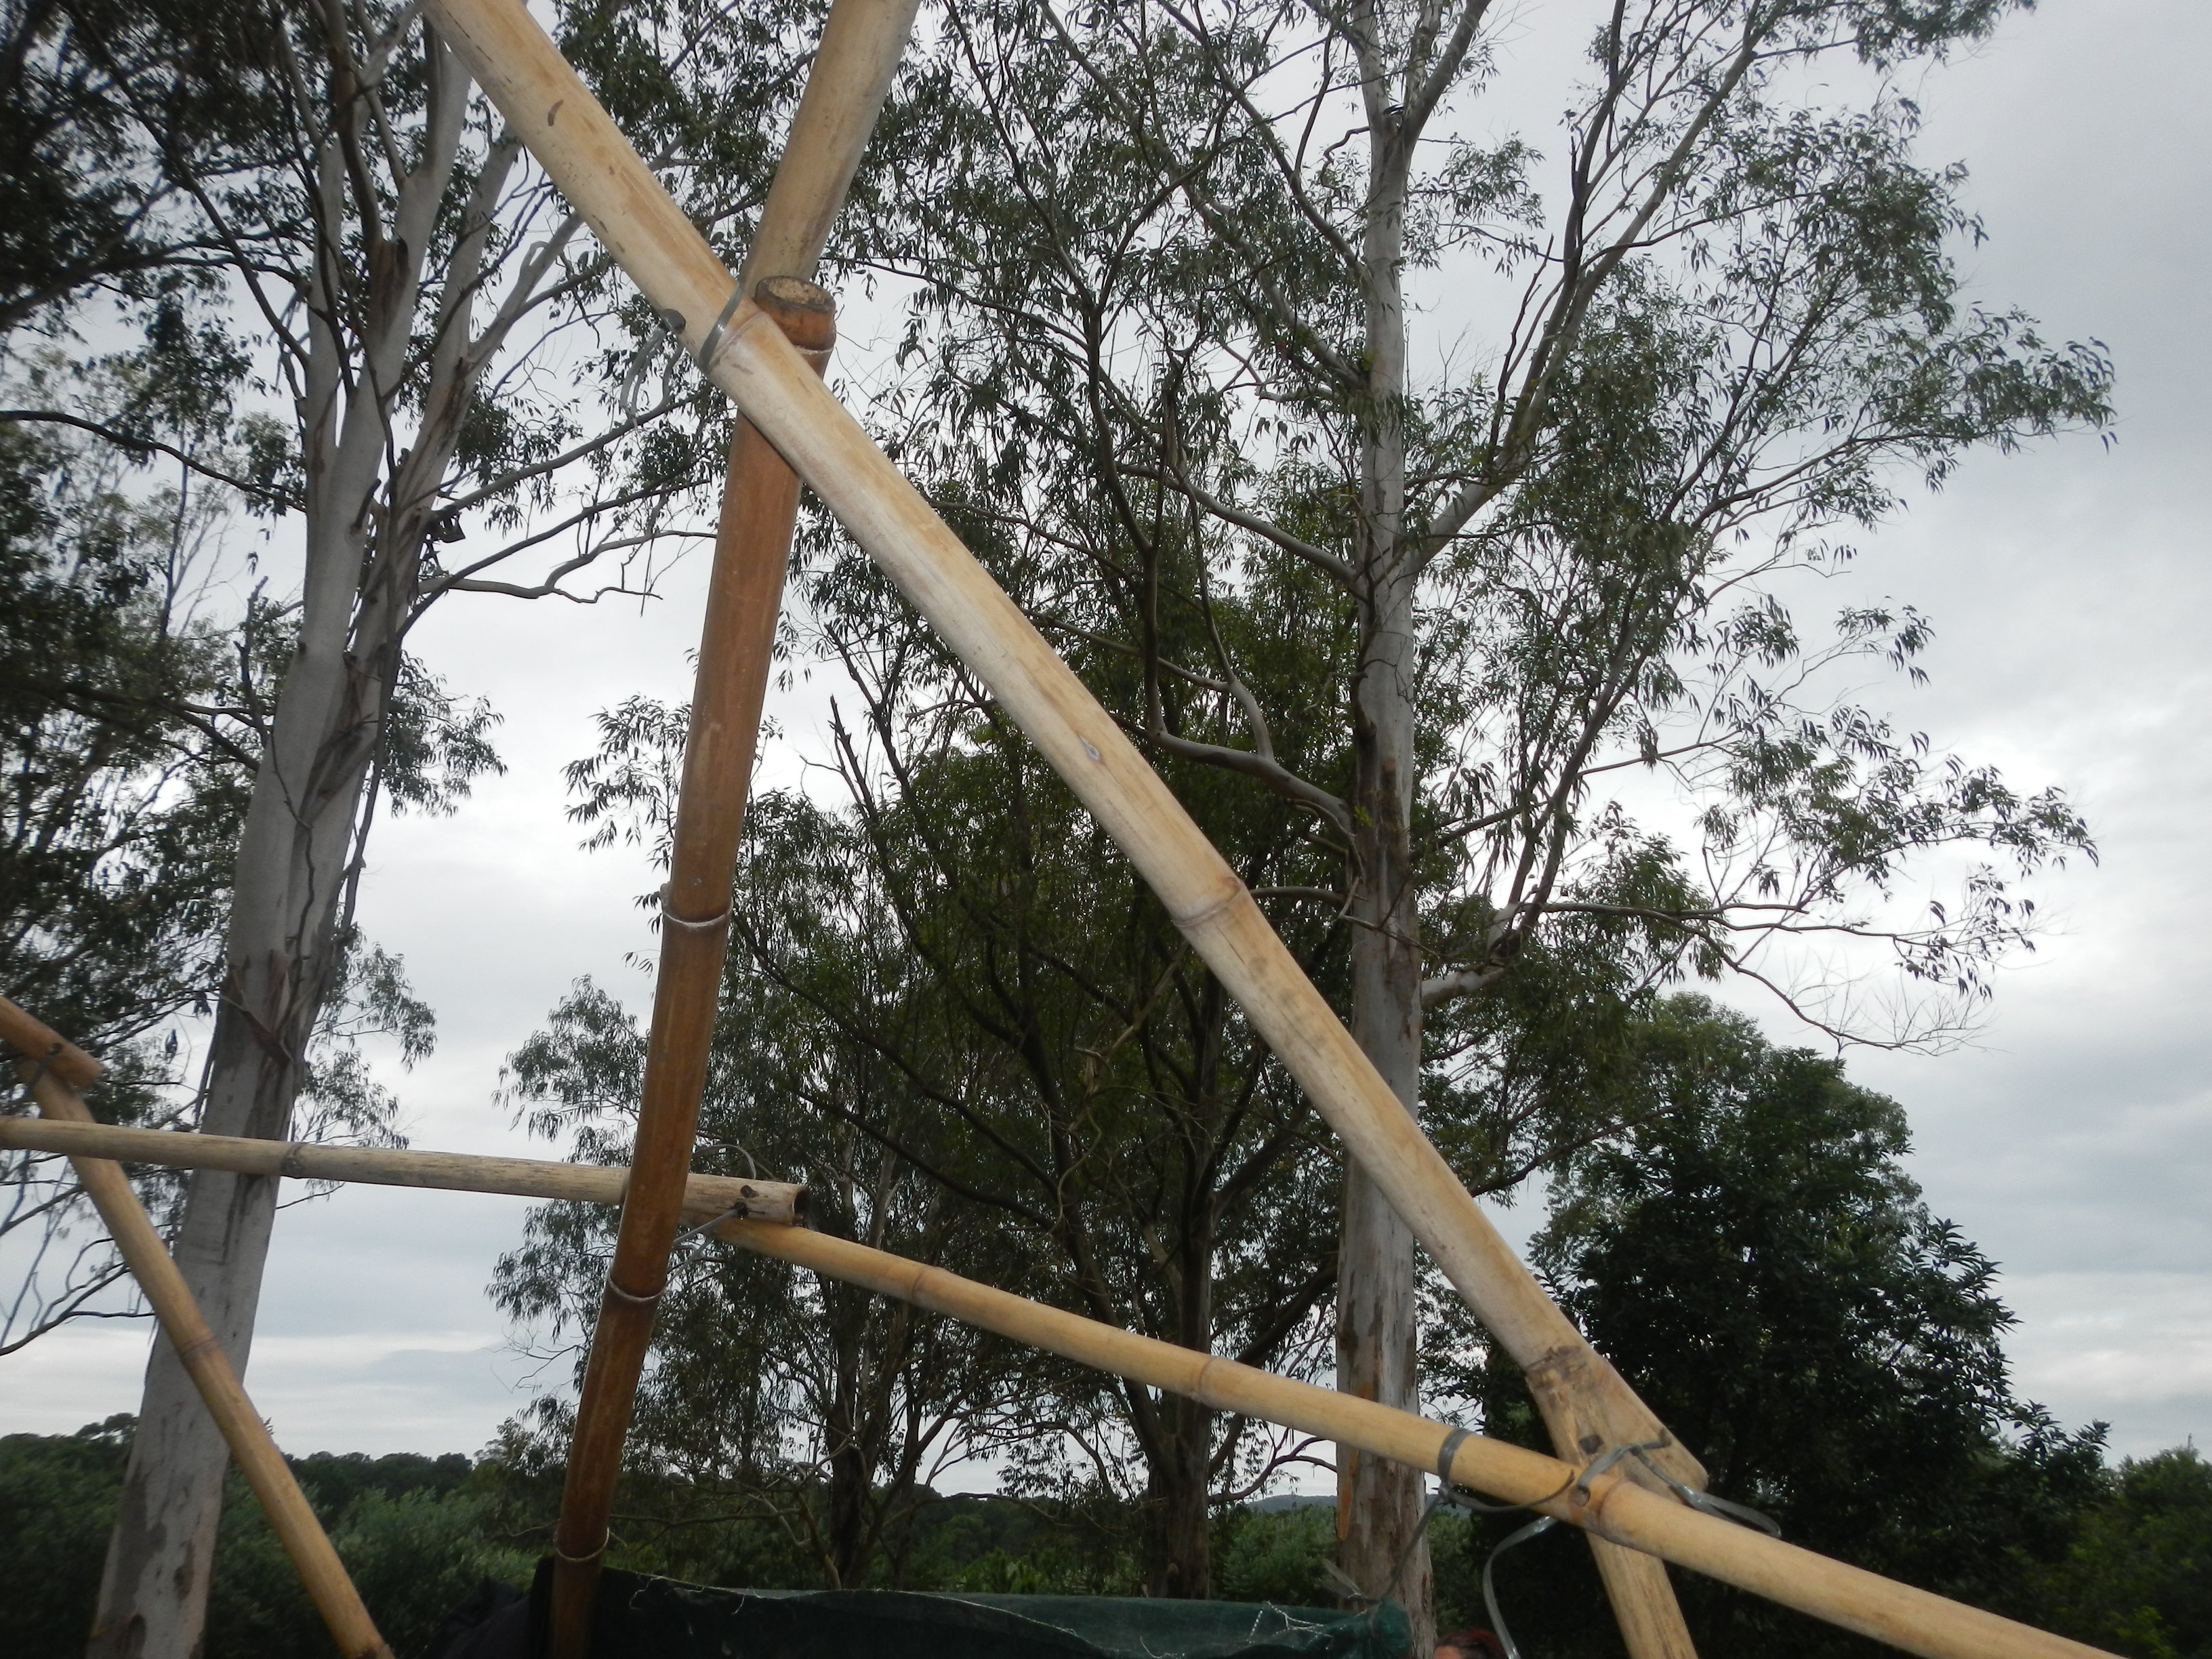 20160528 Camping Rio Vermelho ERGA Sul - Geodésica de bambu 002.jpg